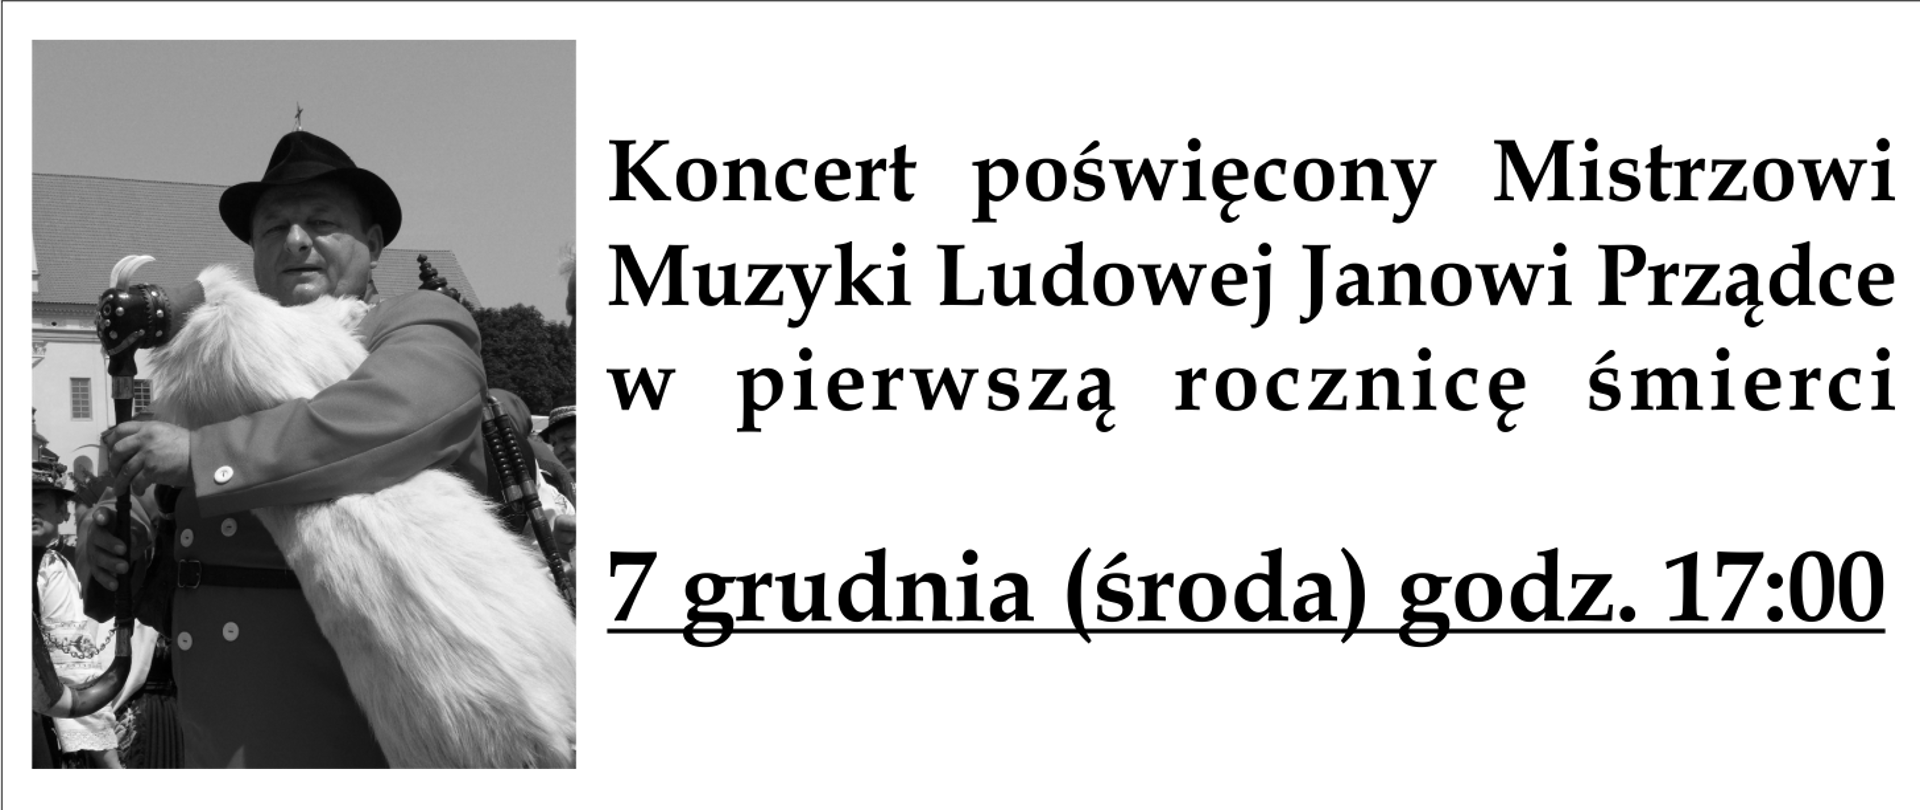 Po lewej czarno-białe zdjęcie Jana Prządki z kozłem weselnym. po prawej tekst: Koncert poświęcony Mistrzowi Janowi Prządce w pierwszą rocznicę śmierci 19 grudnia 2022 r. godz. 17:00